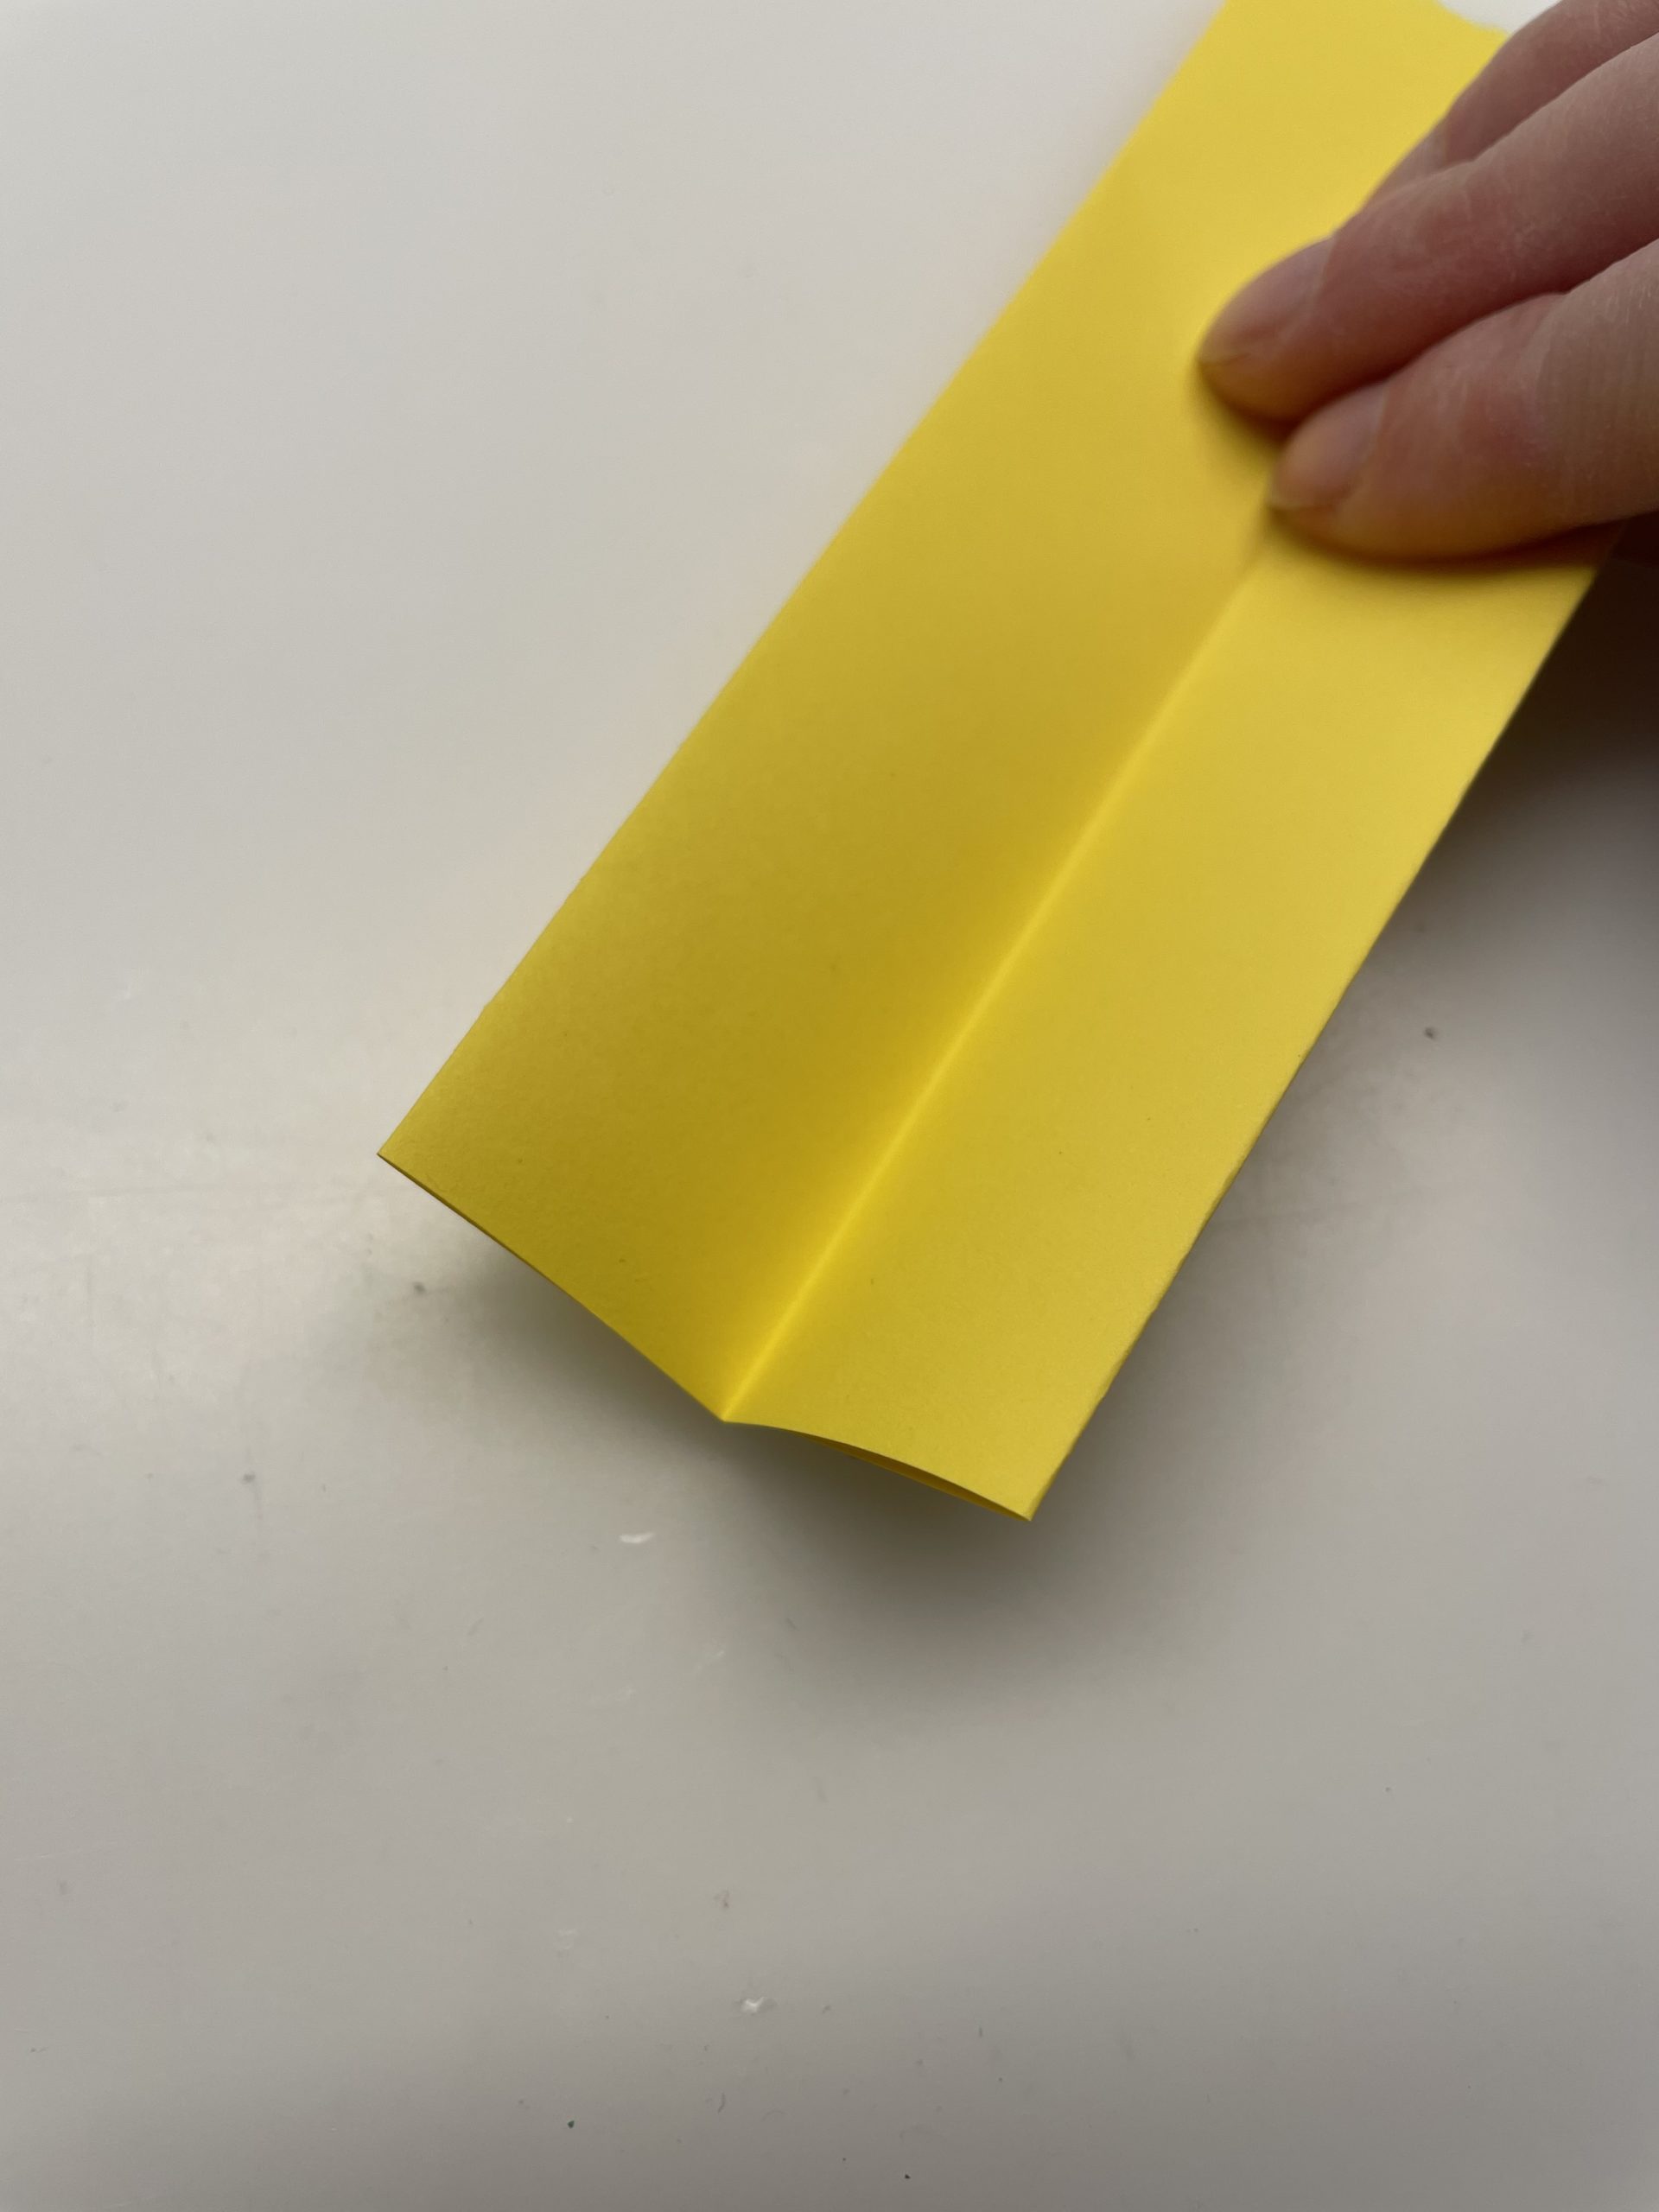 Bild zum Schritt 3 für das Bastel- und DIY-Abenteuer für Kinder: 'Schneidet das Papier auf eine Länge von circa 5 cm...'